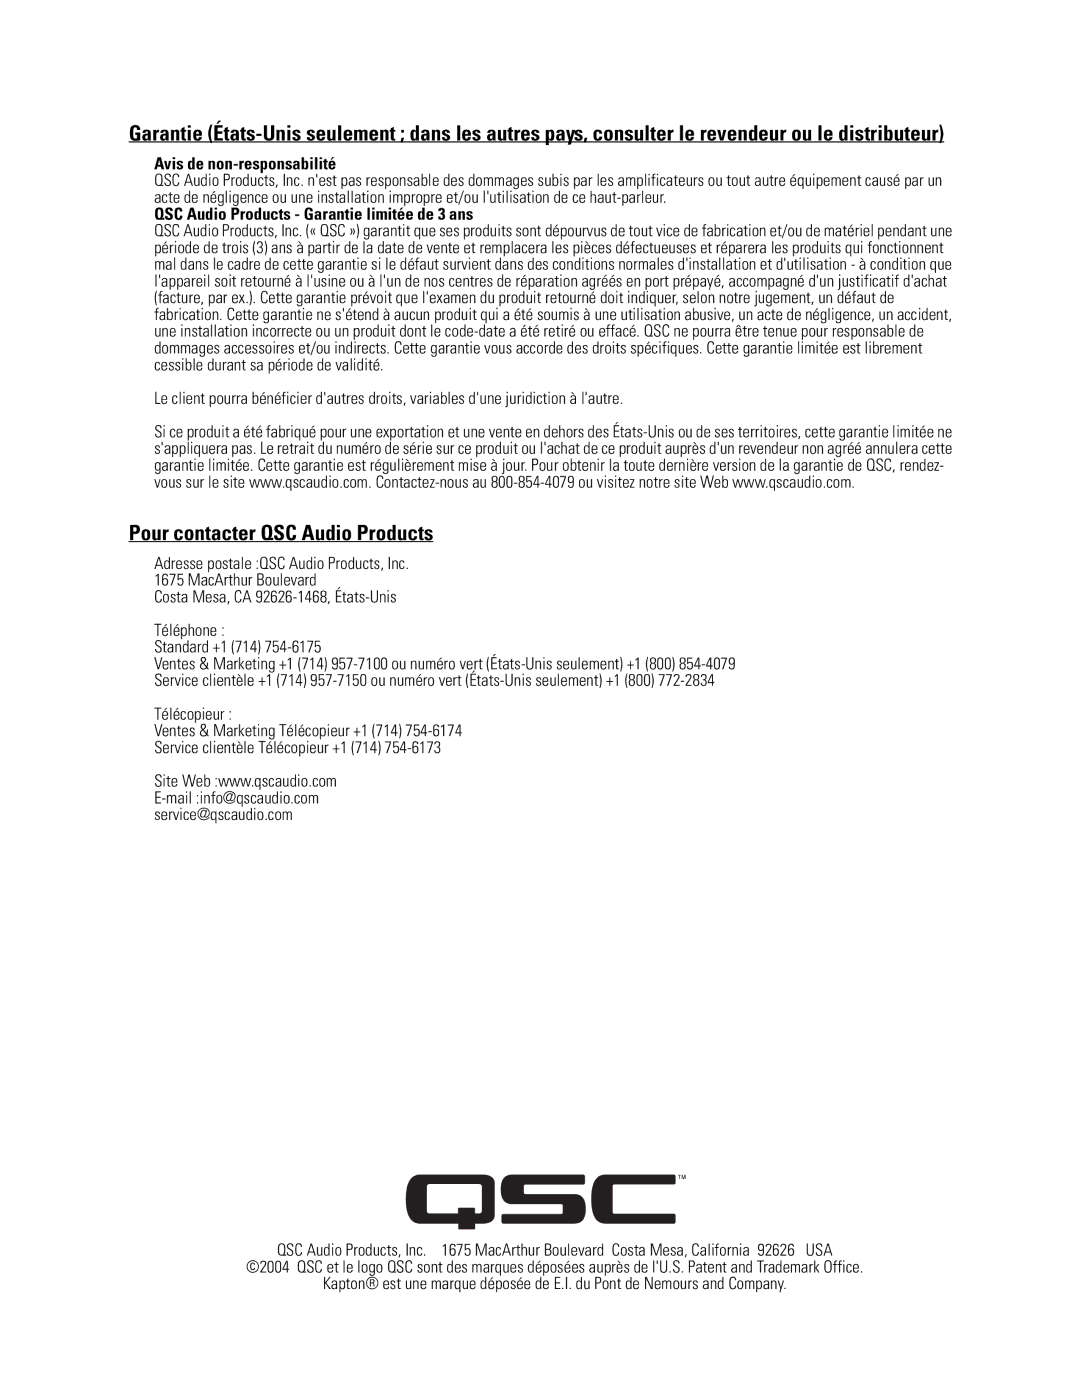 QSC Audio LF-3115, Cinema Low Frequency Loudspeaker Pour contacter QSC Audio Products, Avis de non-responsabilité 